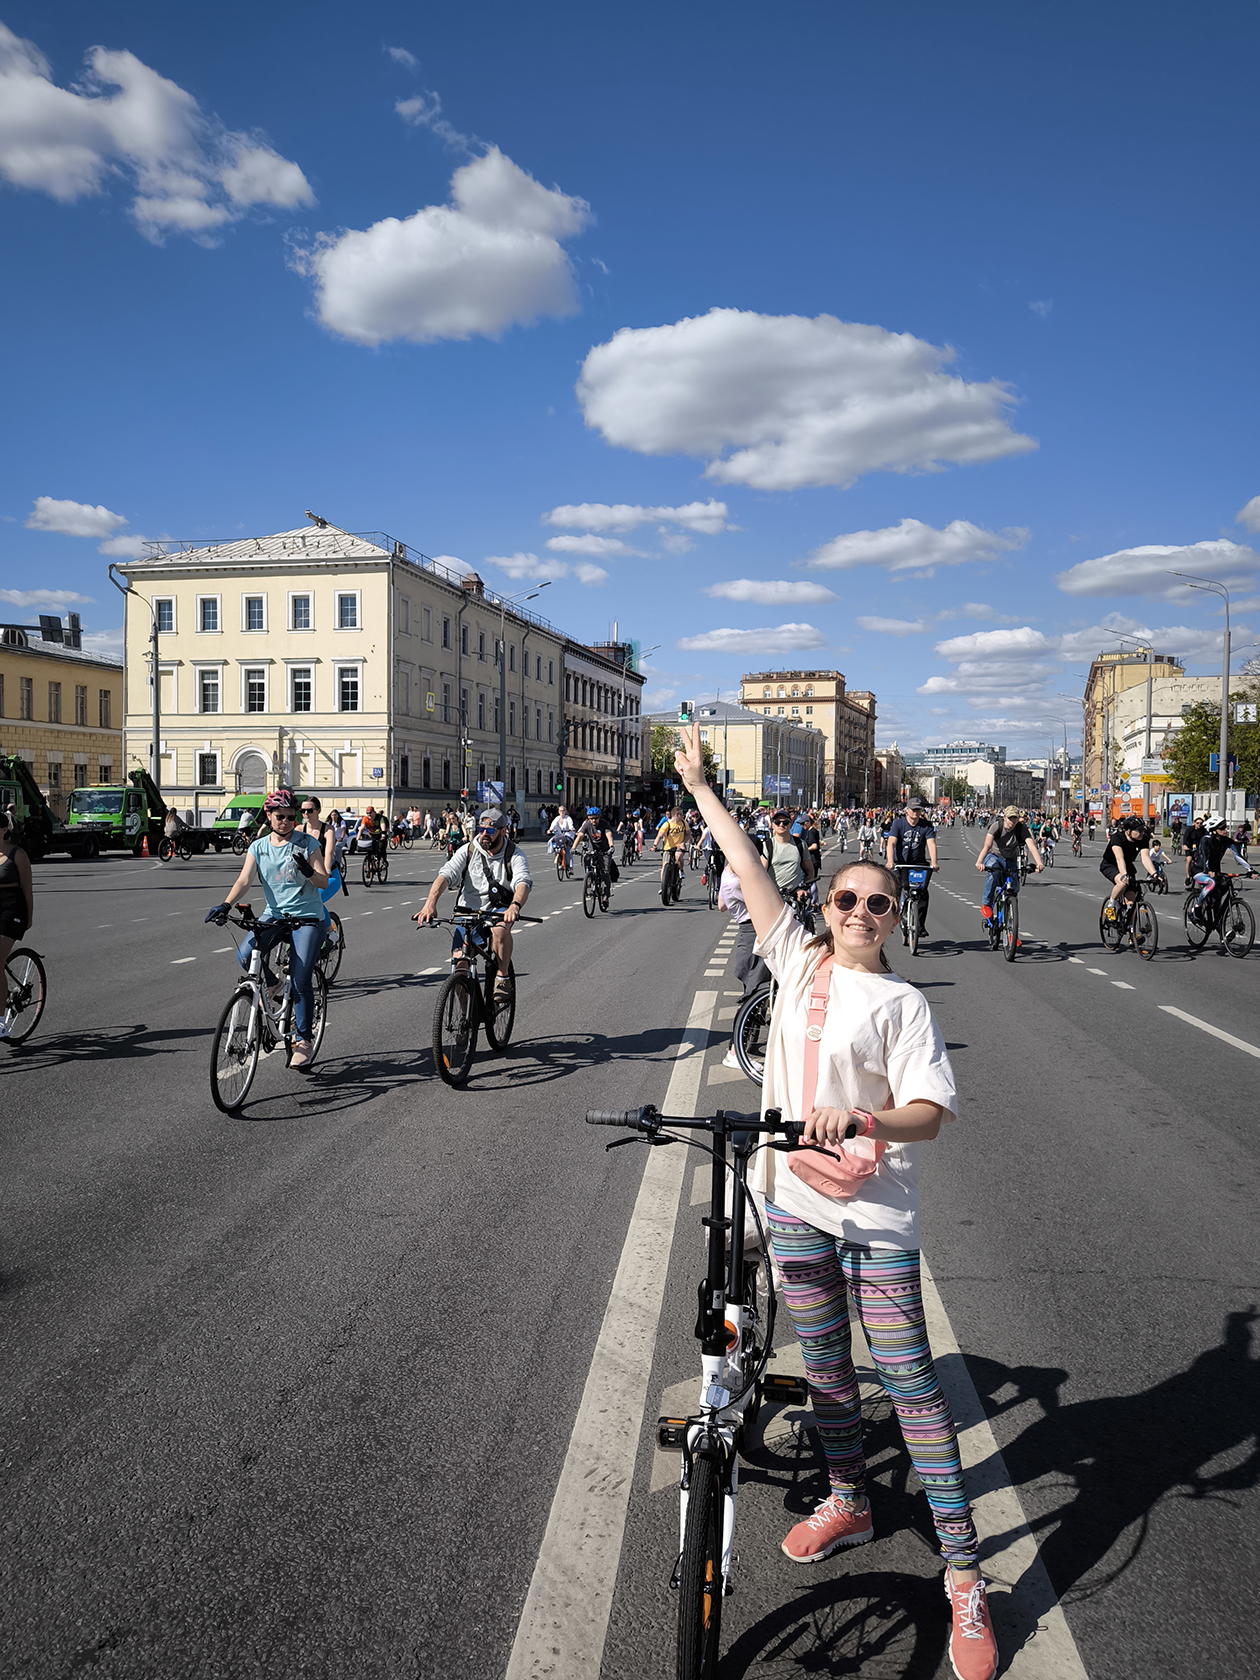 Московский велофестиваль традиционно проводится в выходной день. В этом году он состоялся 18 мая. Ради него с самого утра перекрывают Садовое кольцо, по которому сначала проходит велогонка, а потом запускают колонну из всех желающих прокатиться. Обычно перекрытия действуют с семи утра до 17 вечера